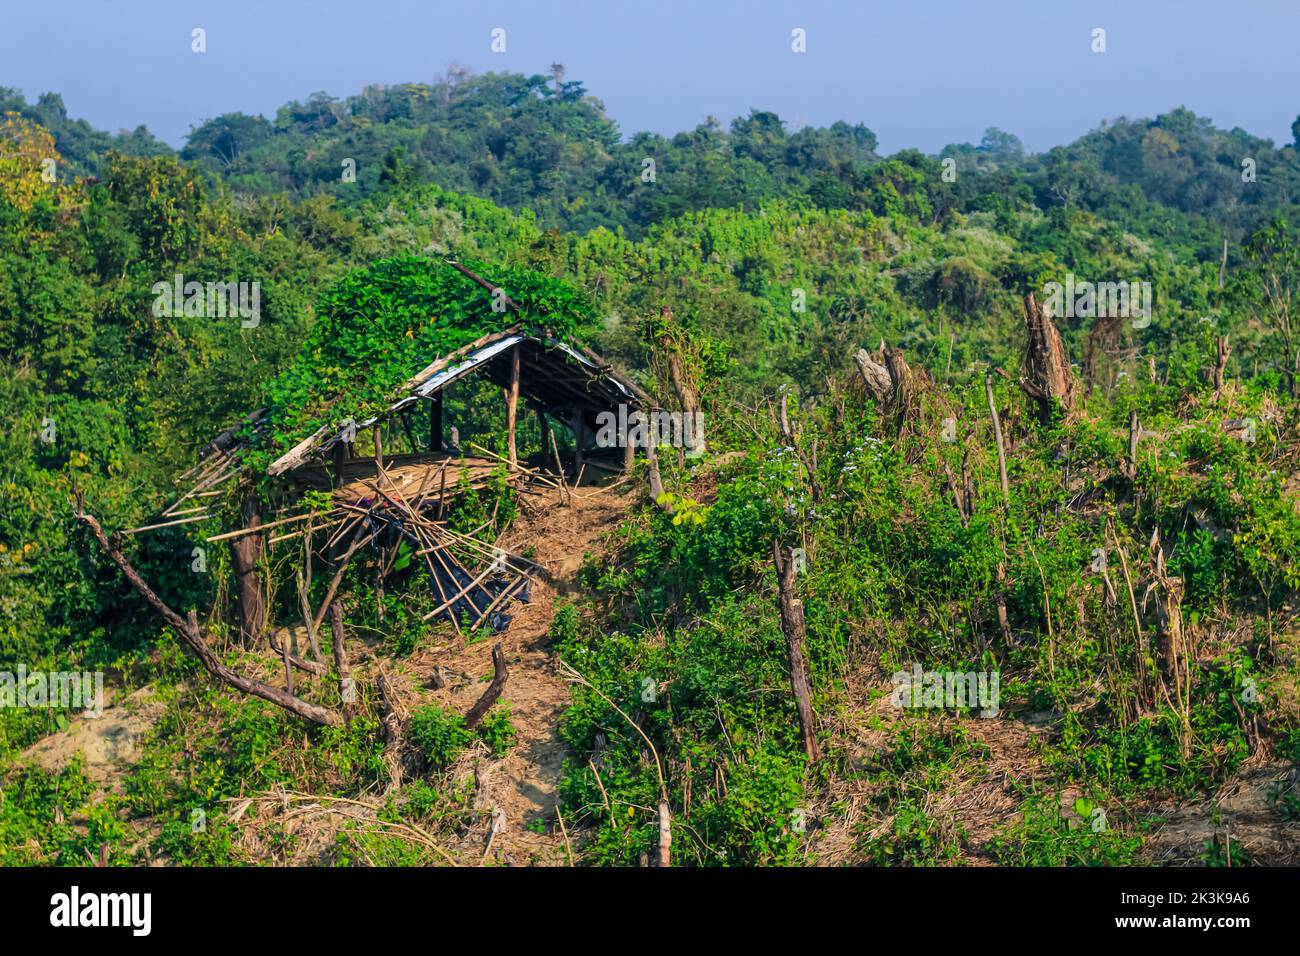 Entwaldung Umweltproblem, Regenwälder werden für Ölpalmenplantagen zerstört. Berge Lichtung Bäume schneiden einen Wald. Stockfoto